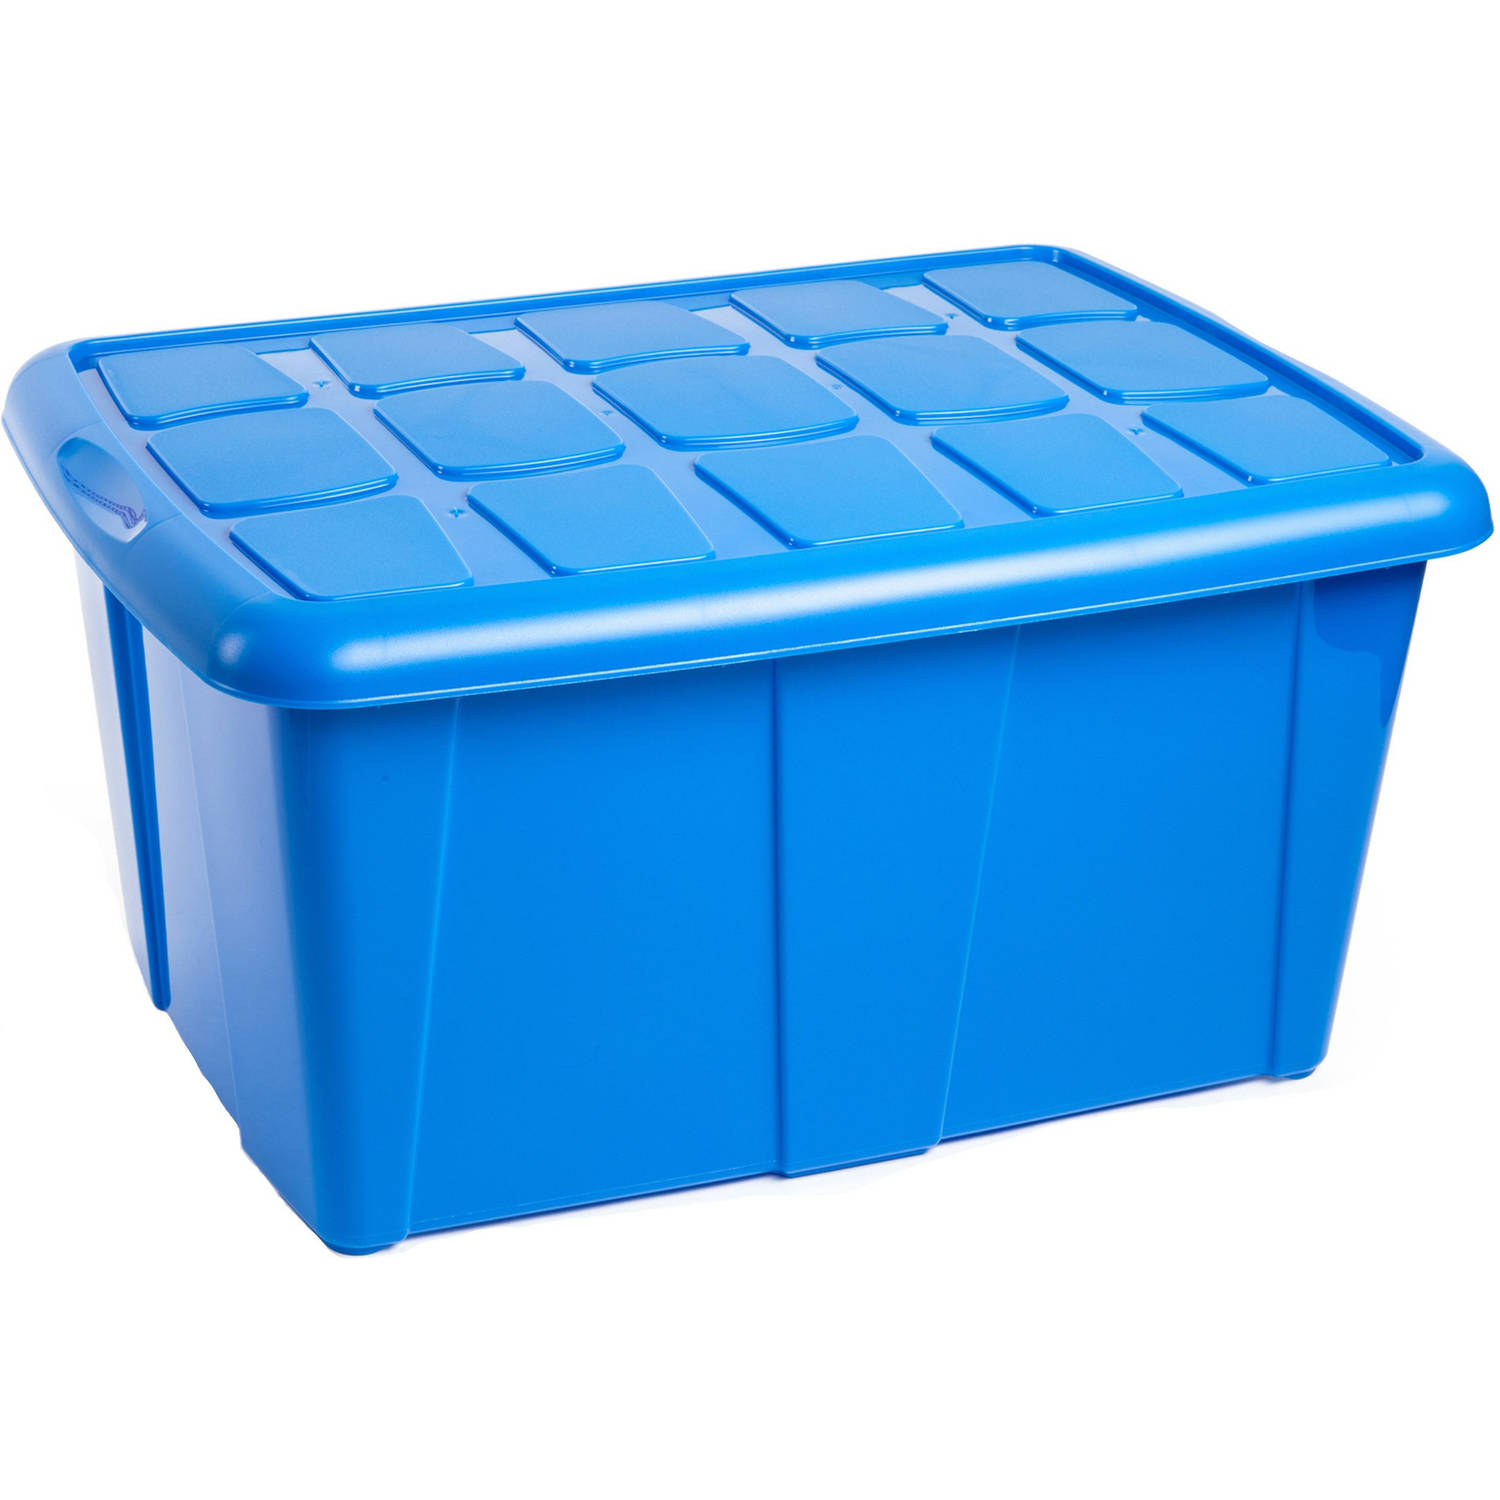 Opslagbox kist van 60 liter met deksel Blauw kunststof 63 x 46 x 32 cm Opbergbox